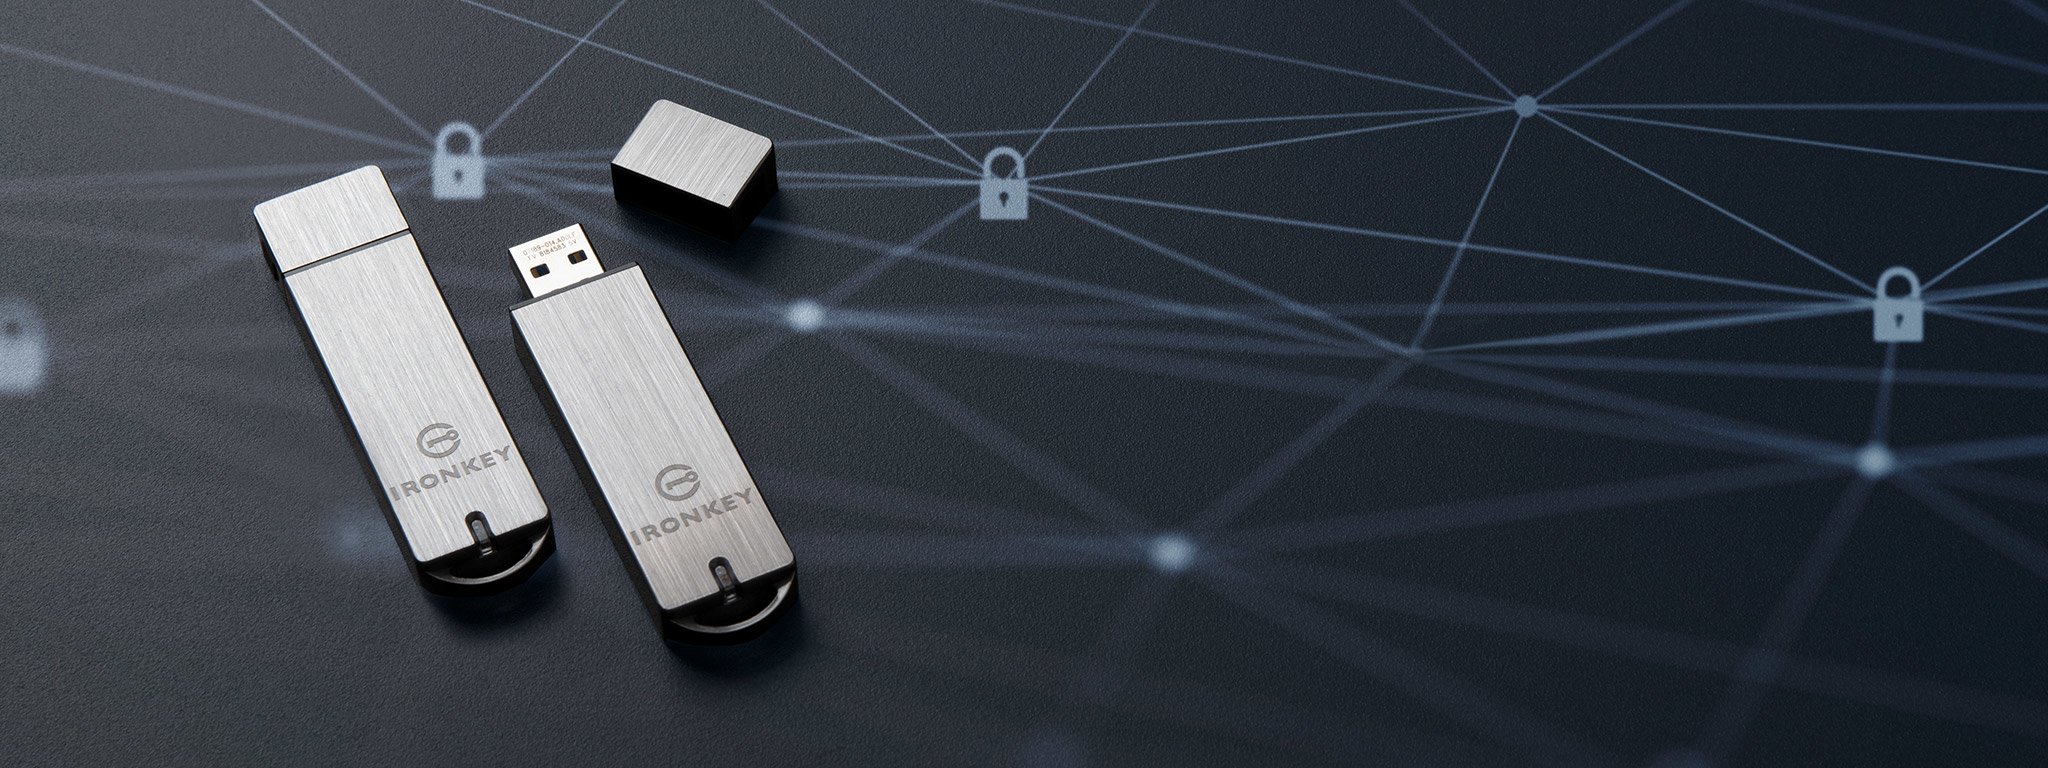 Пара USB флеш-накопичувачів із шифруванням IronKey S1000 лежить на чорній поверхні з графічним зображенням піктограм замка білого кольору